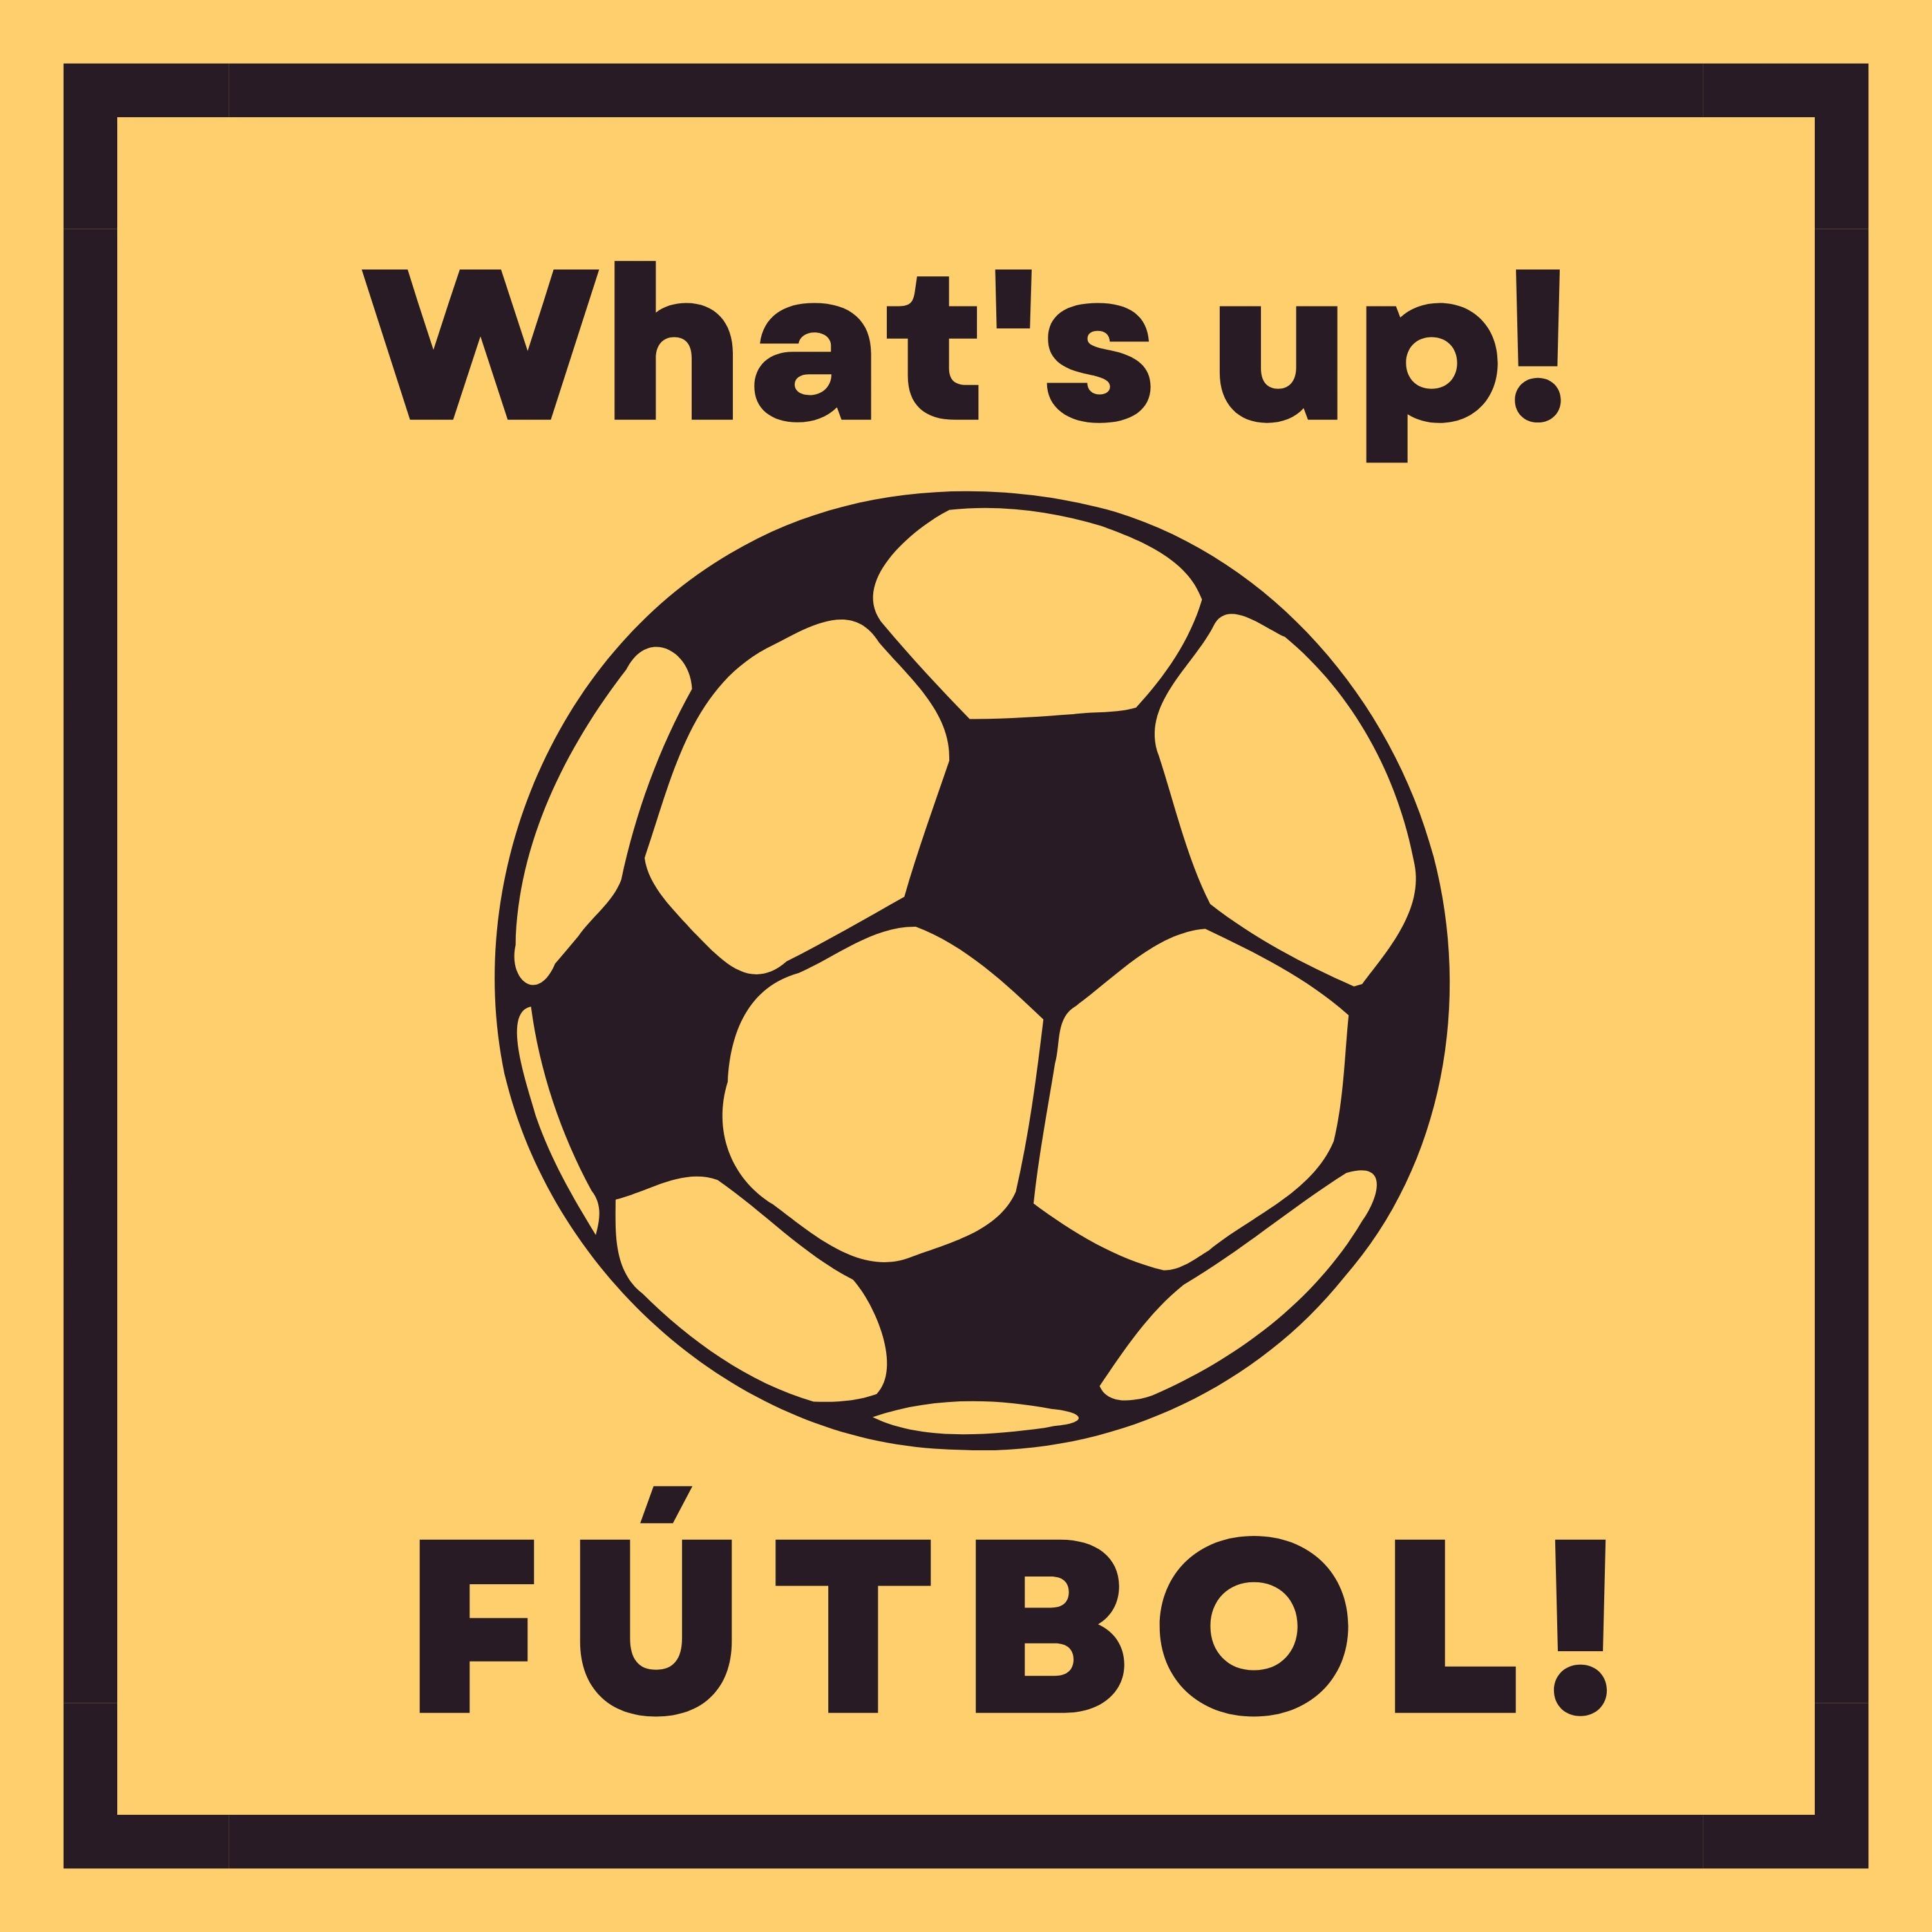 What's up Futbol!